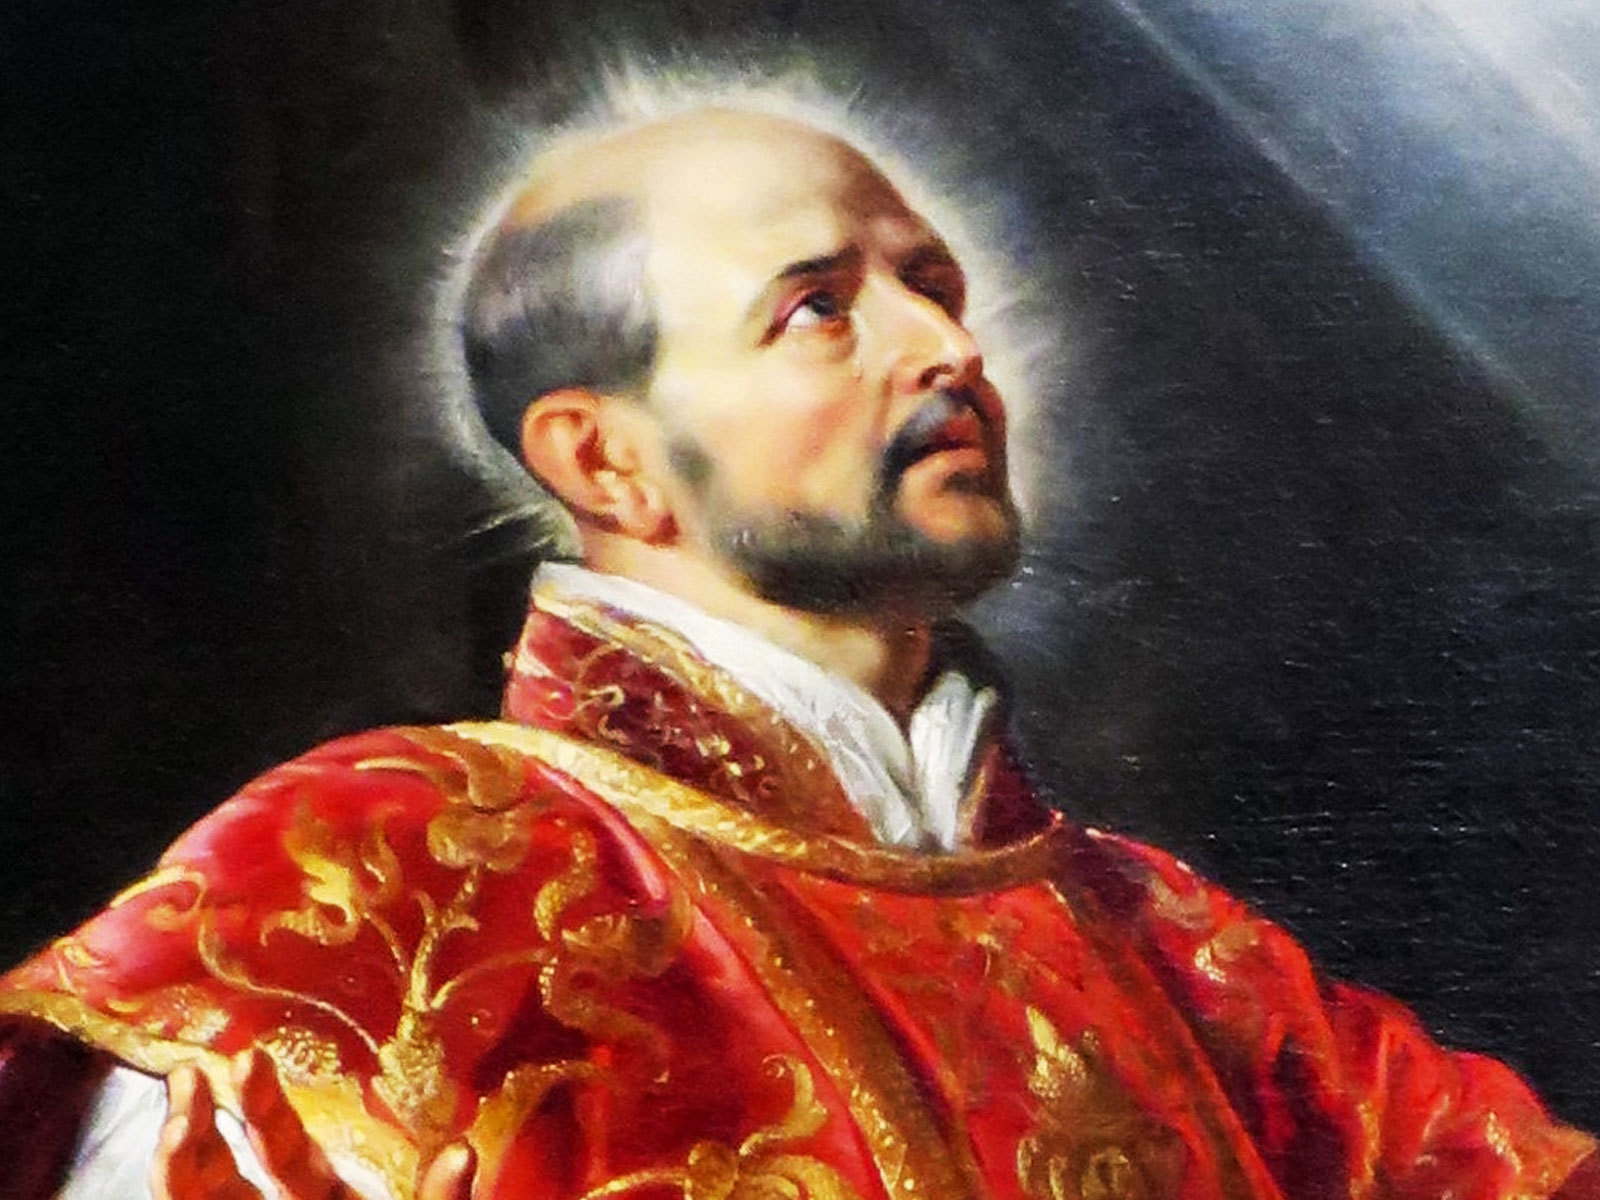 Santo Inácio de Loyola – Pugnacidade, penetração política e psicologia finíssima